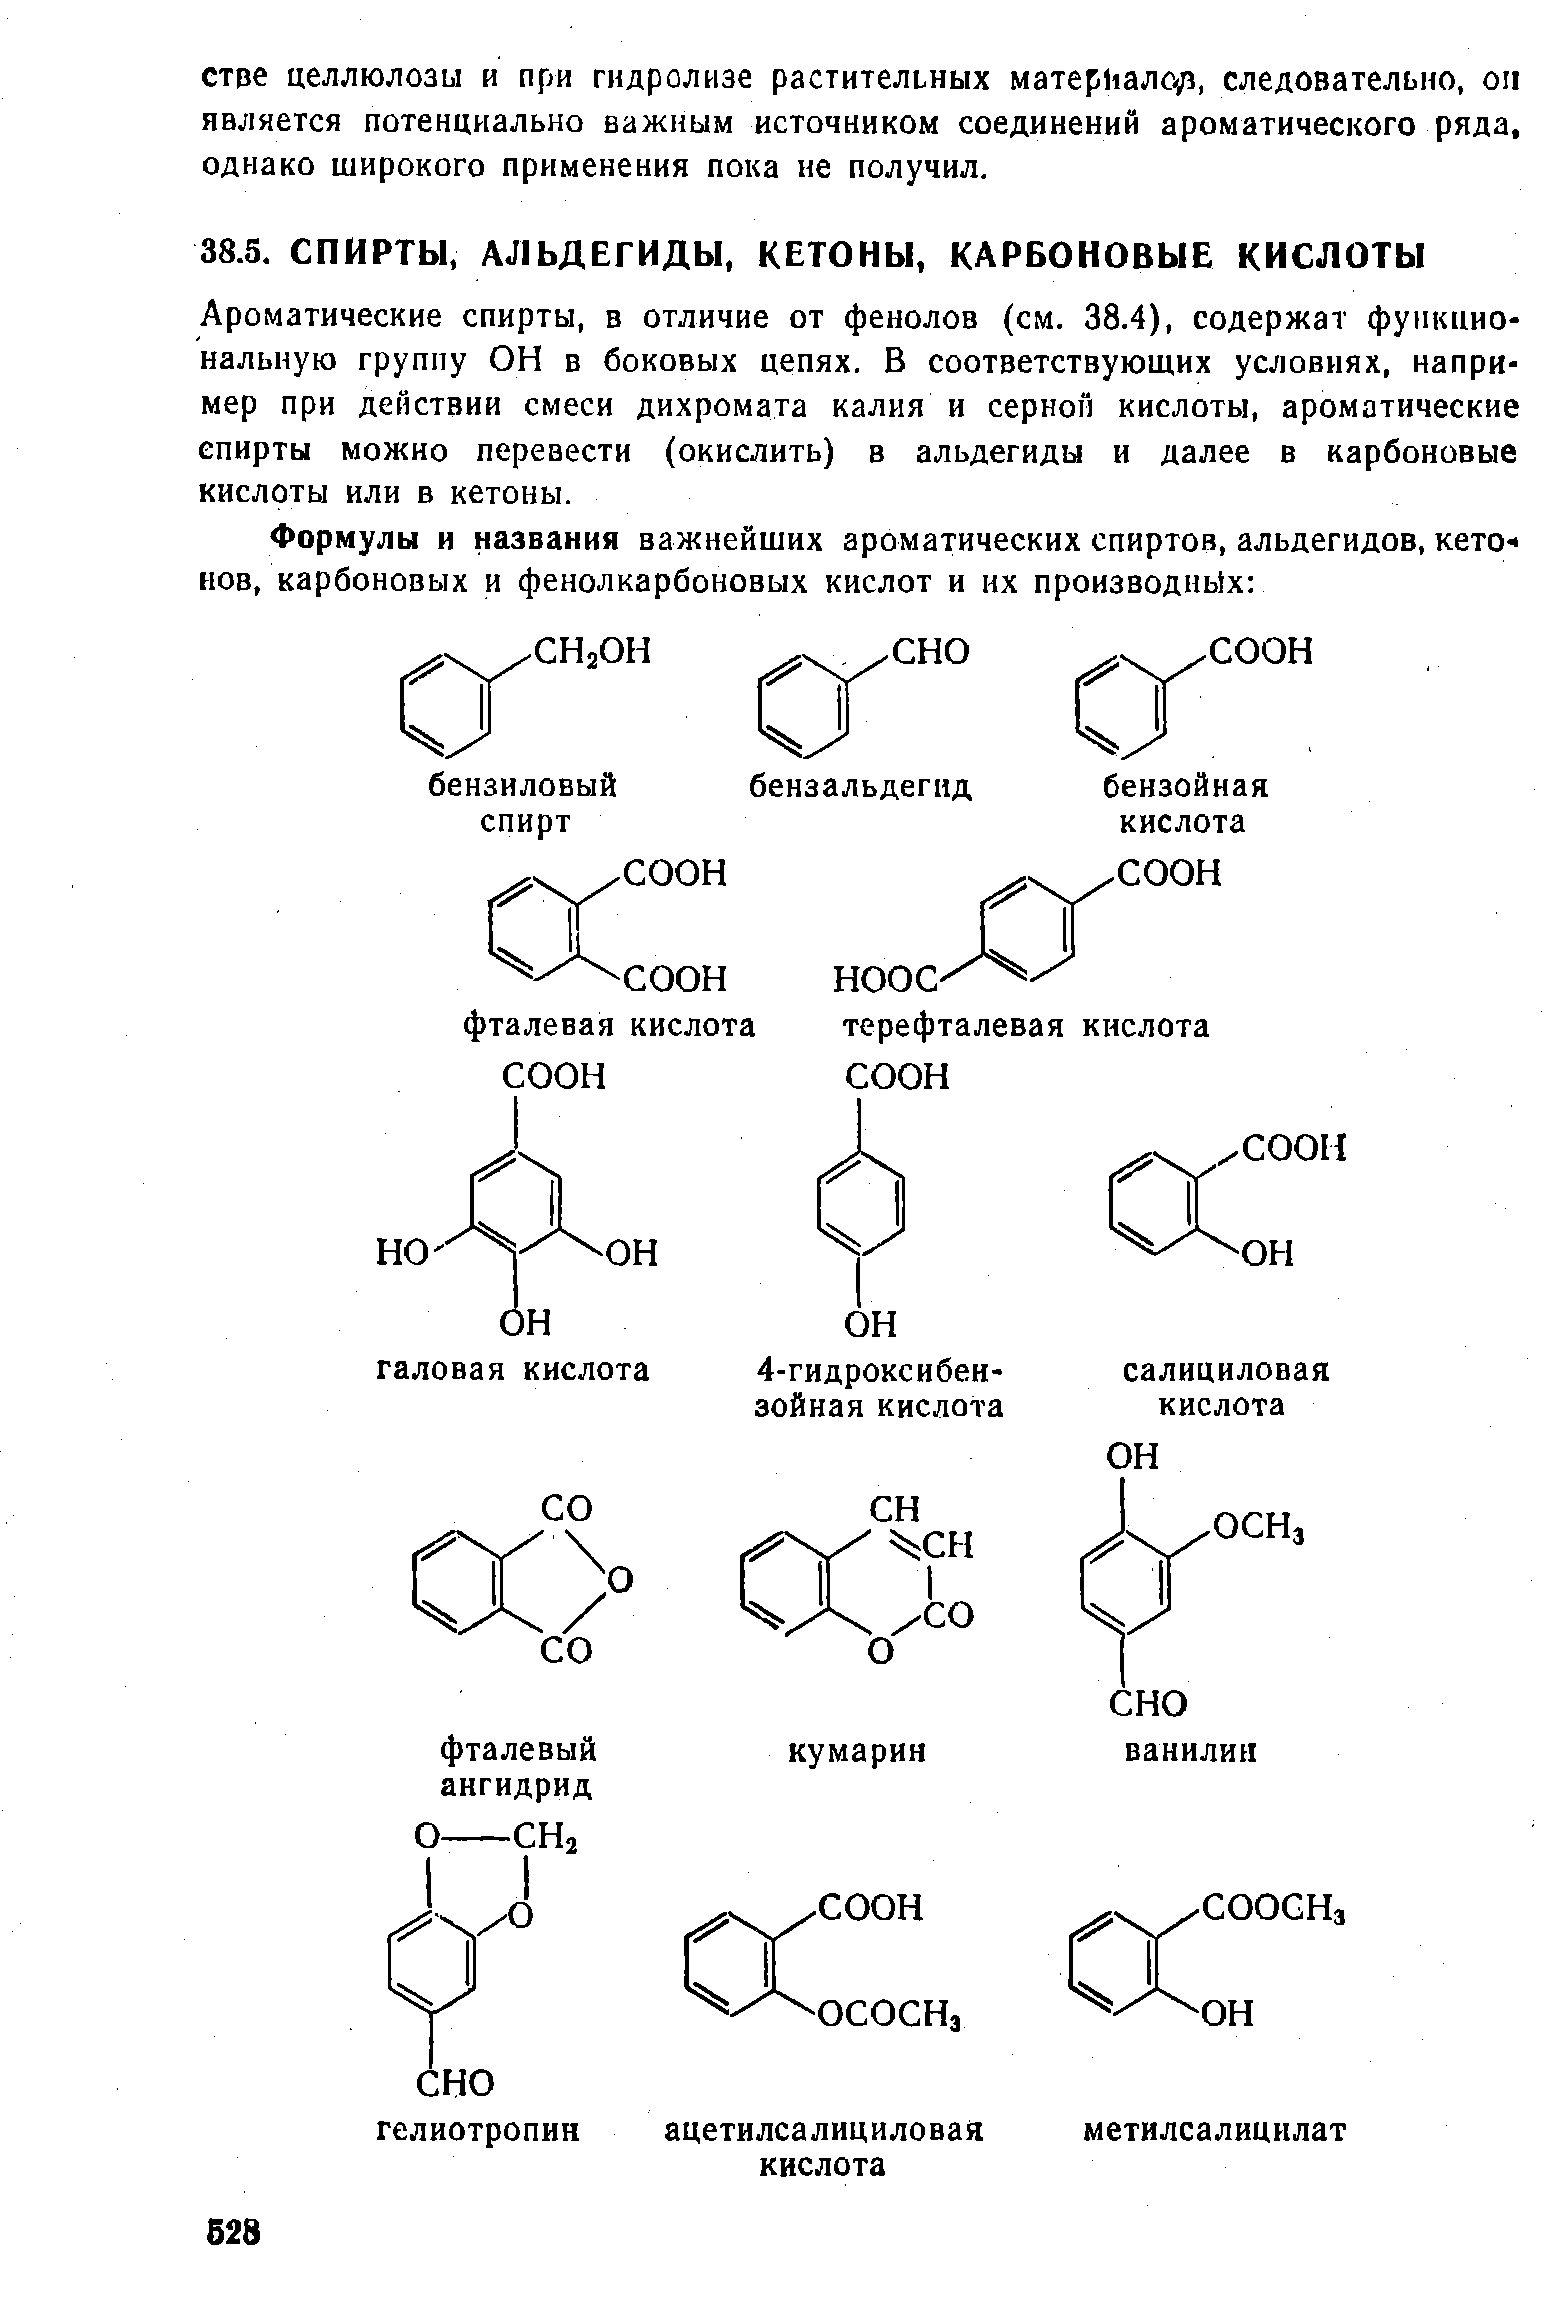 Ароматические спирты, в отличие от фенолов (см. 38.4), содержат функциональную группу ОН в боковых цепях. В соответствующих условиях, например при действии смеси дихромата калия и серной кислоты, ароматические спирты можно перевести (окислить) в альдегиды и далее в карбоновые кислоты или в кетоны.